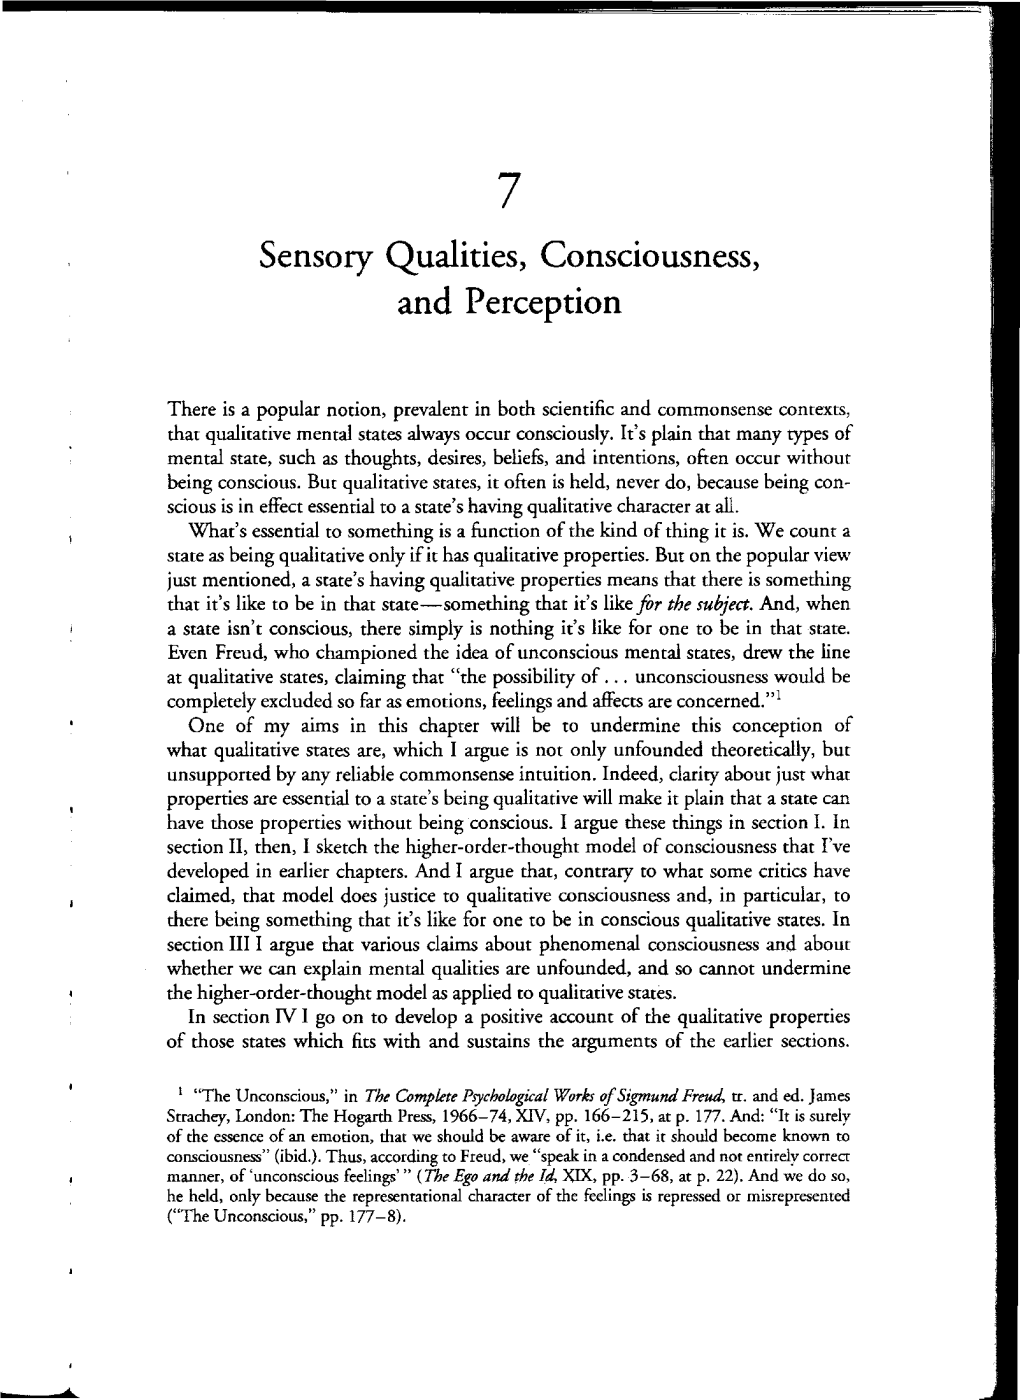 Sensory Qualities, Consciousness, and Perception